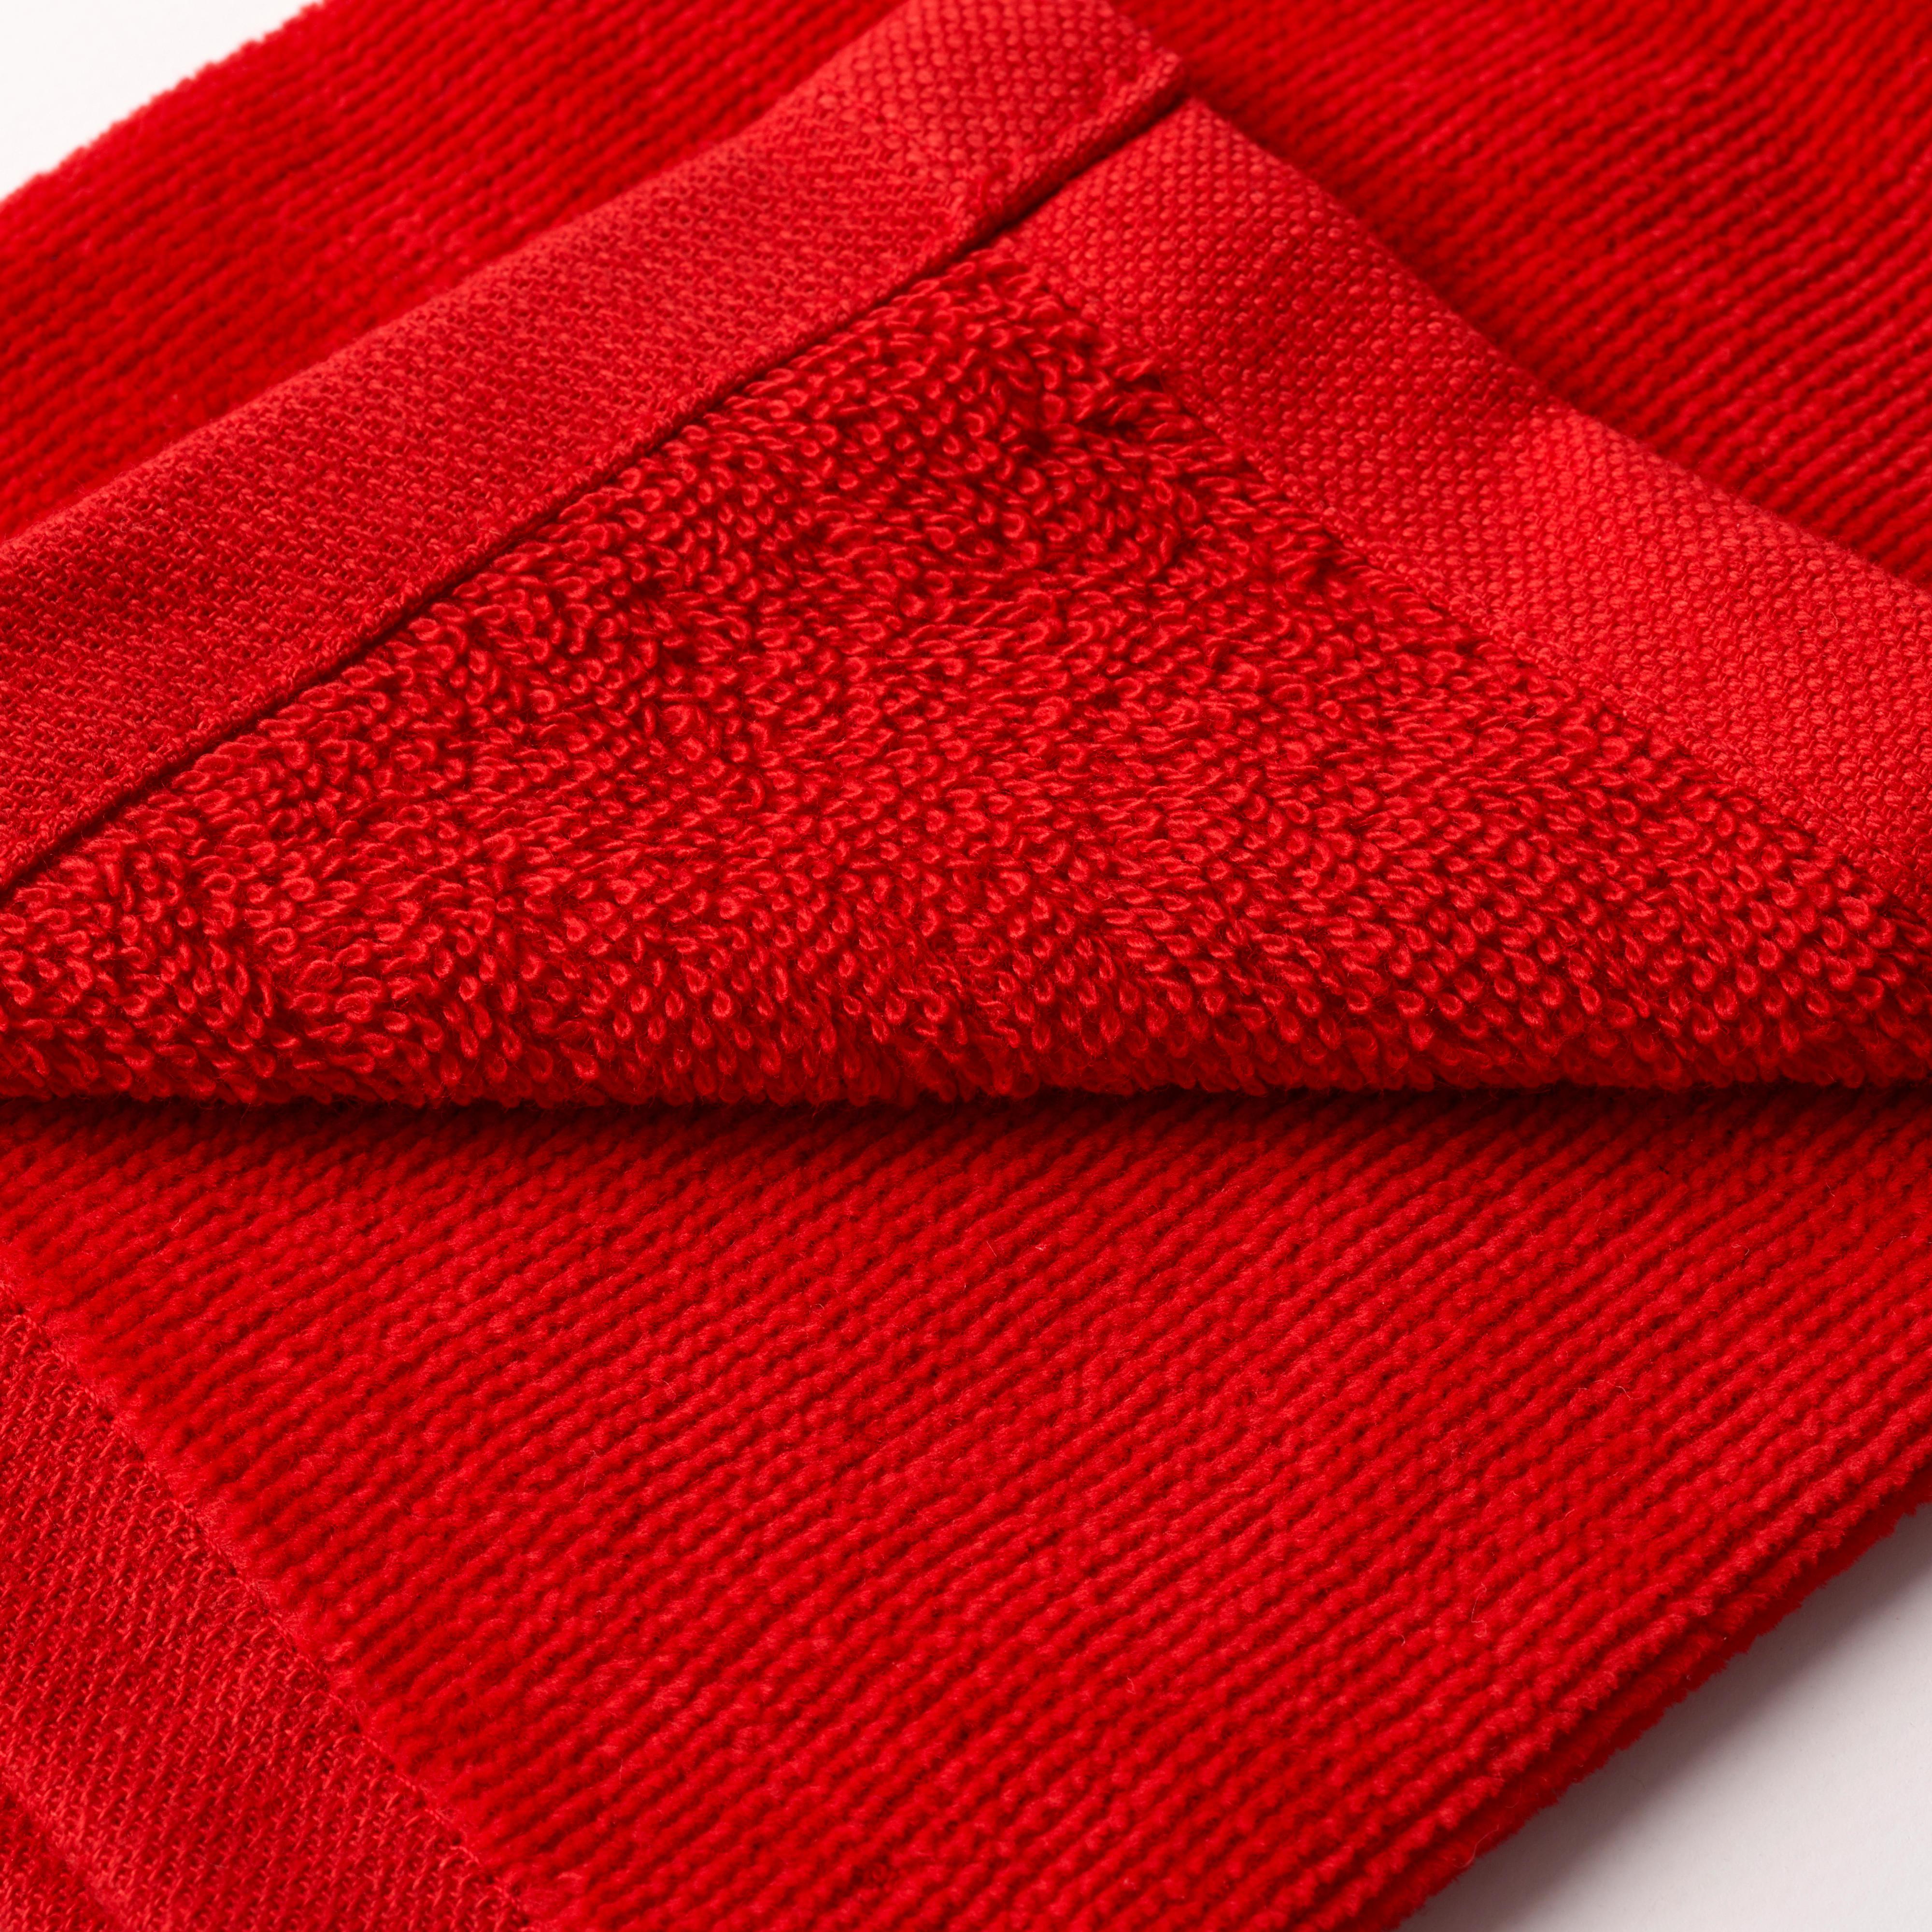 Tri-Fold Golf Towel - Inesis Red - INESIS